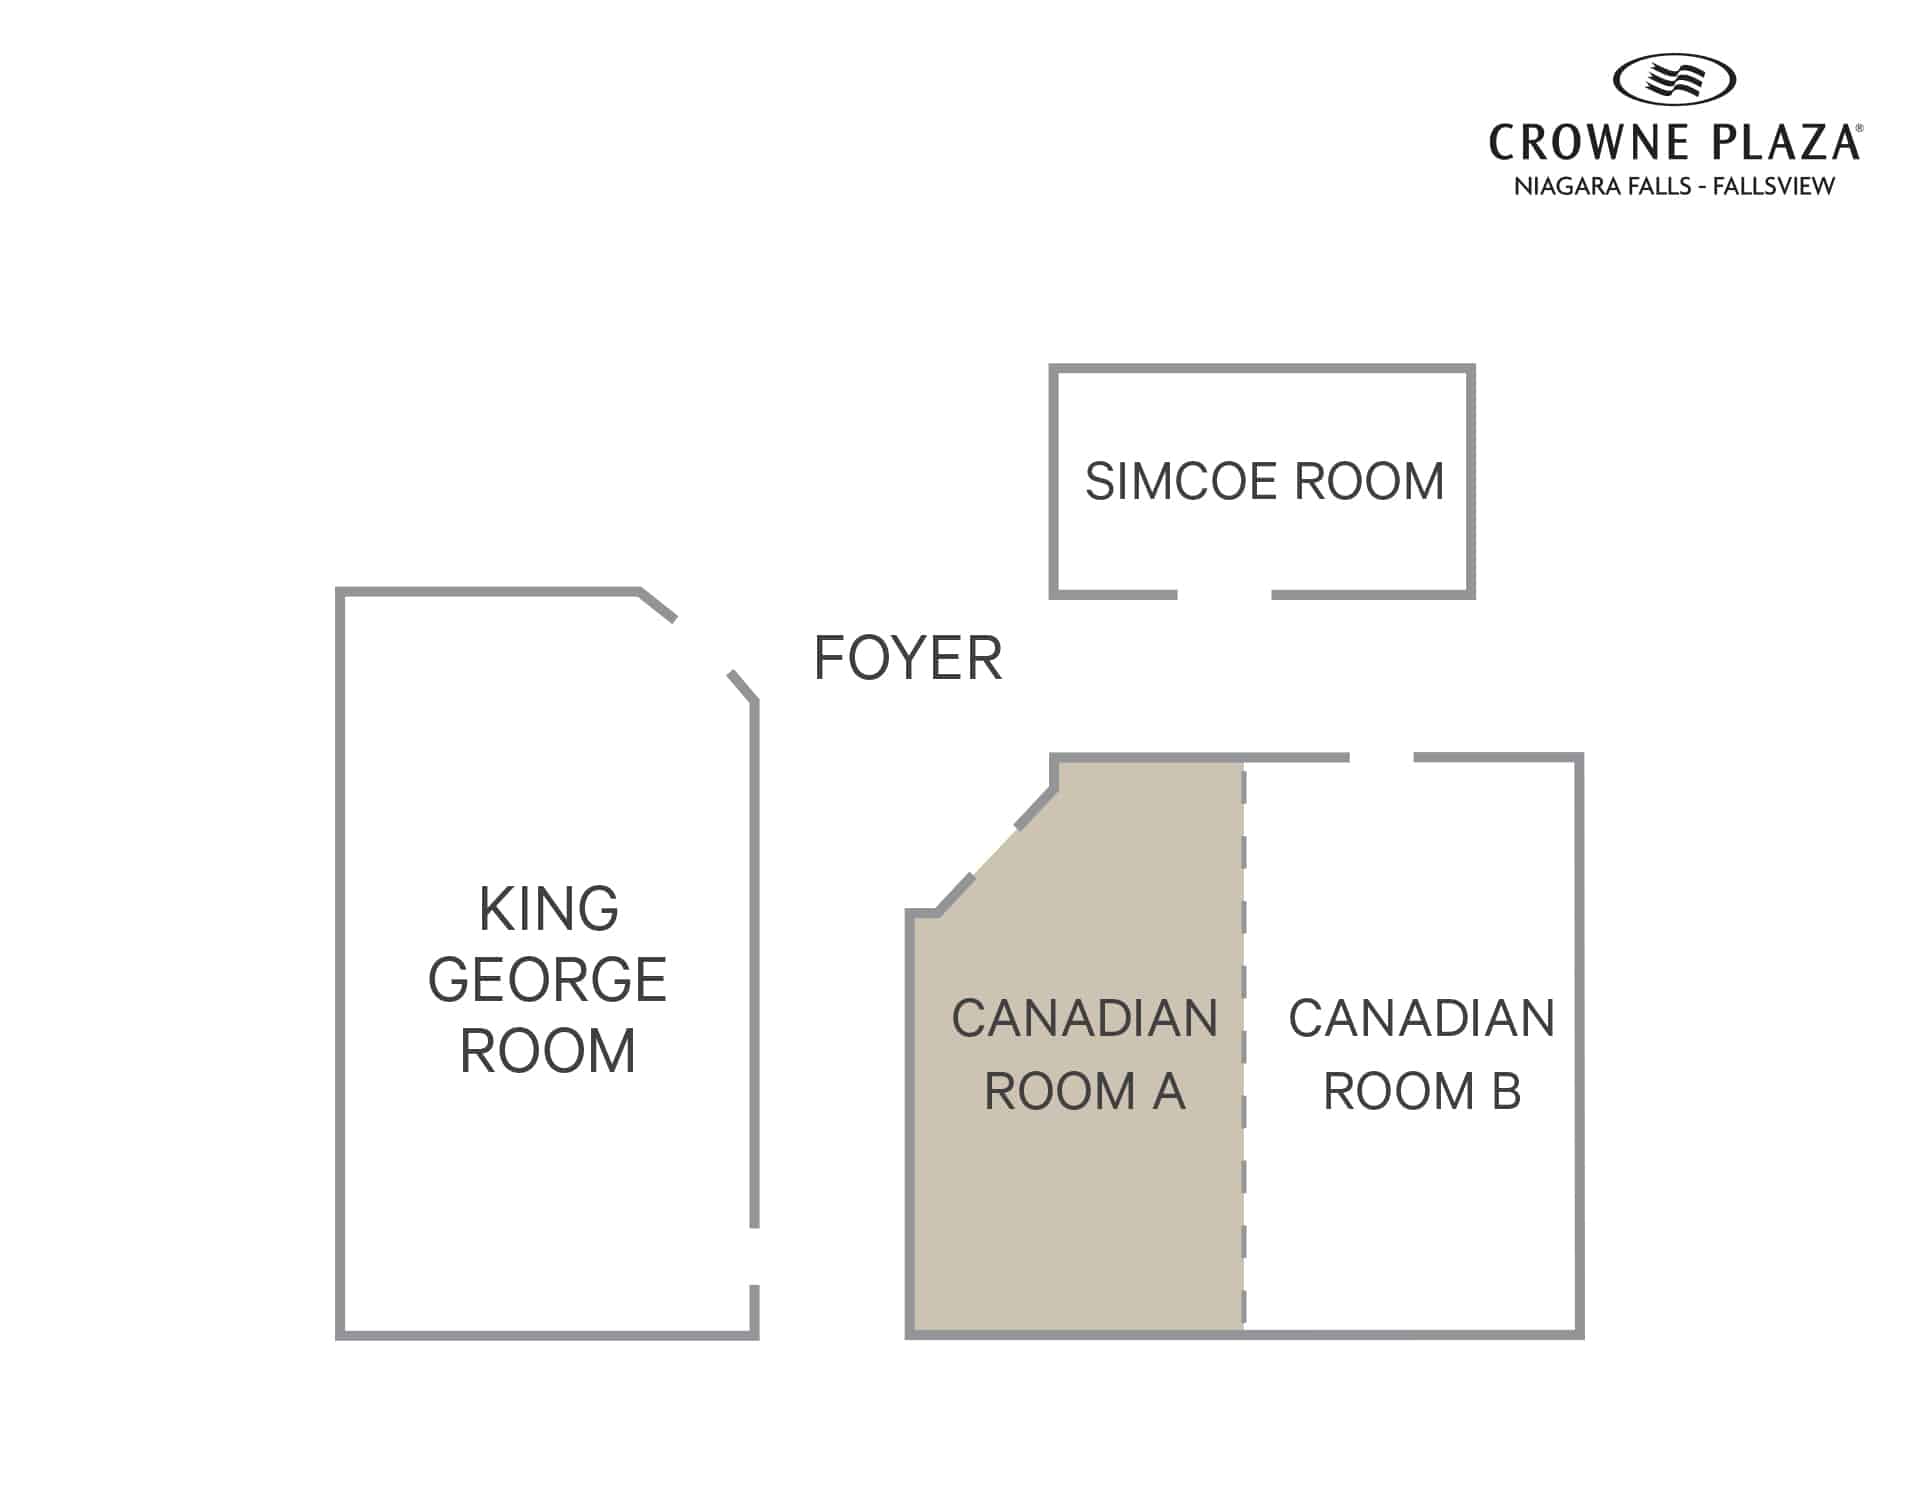 Crowne Plaza Floor Plan